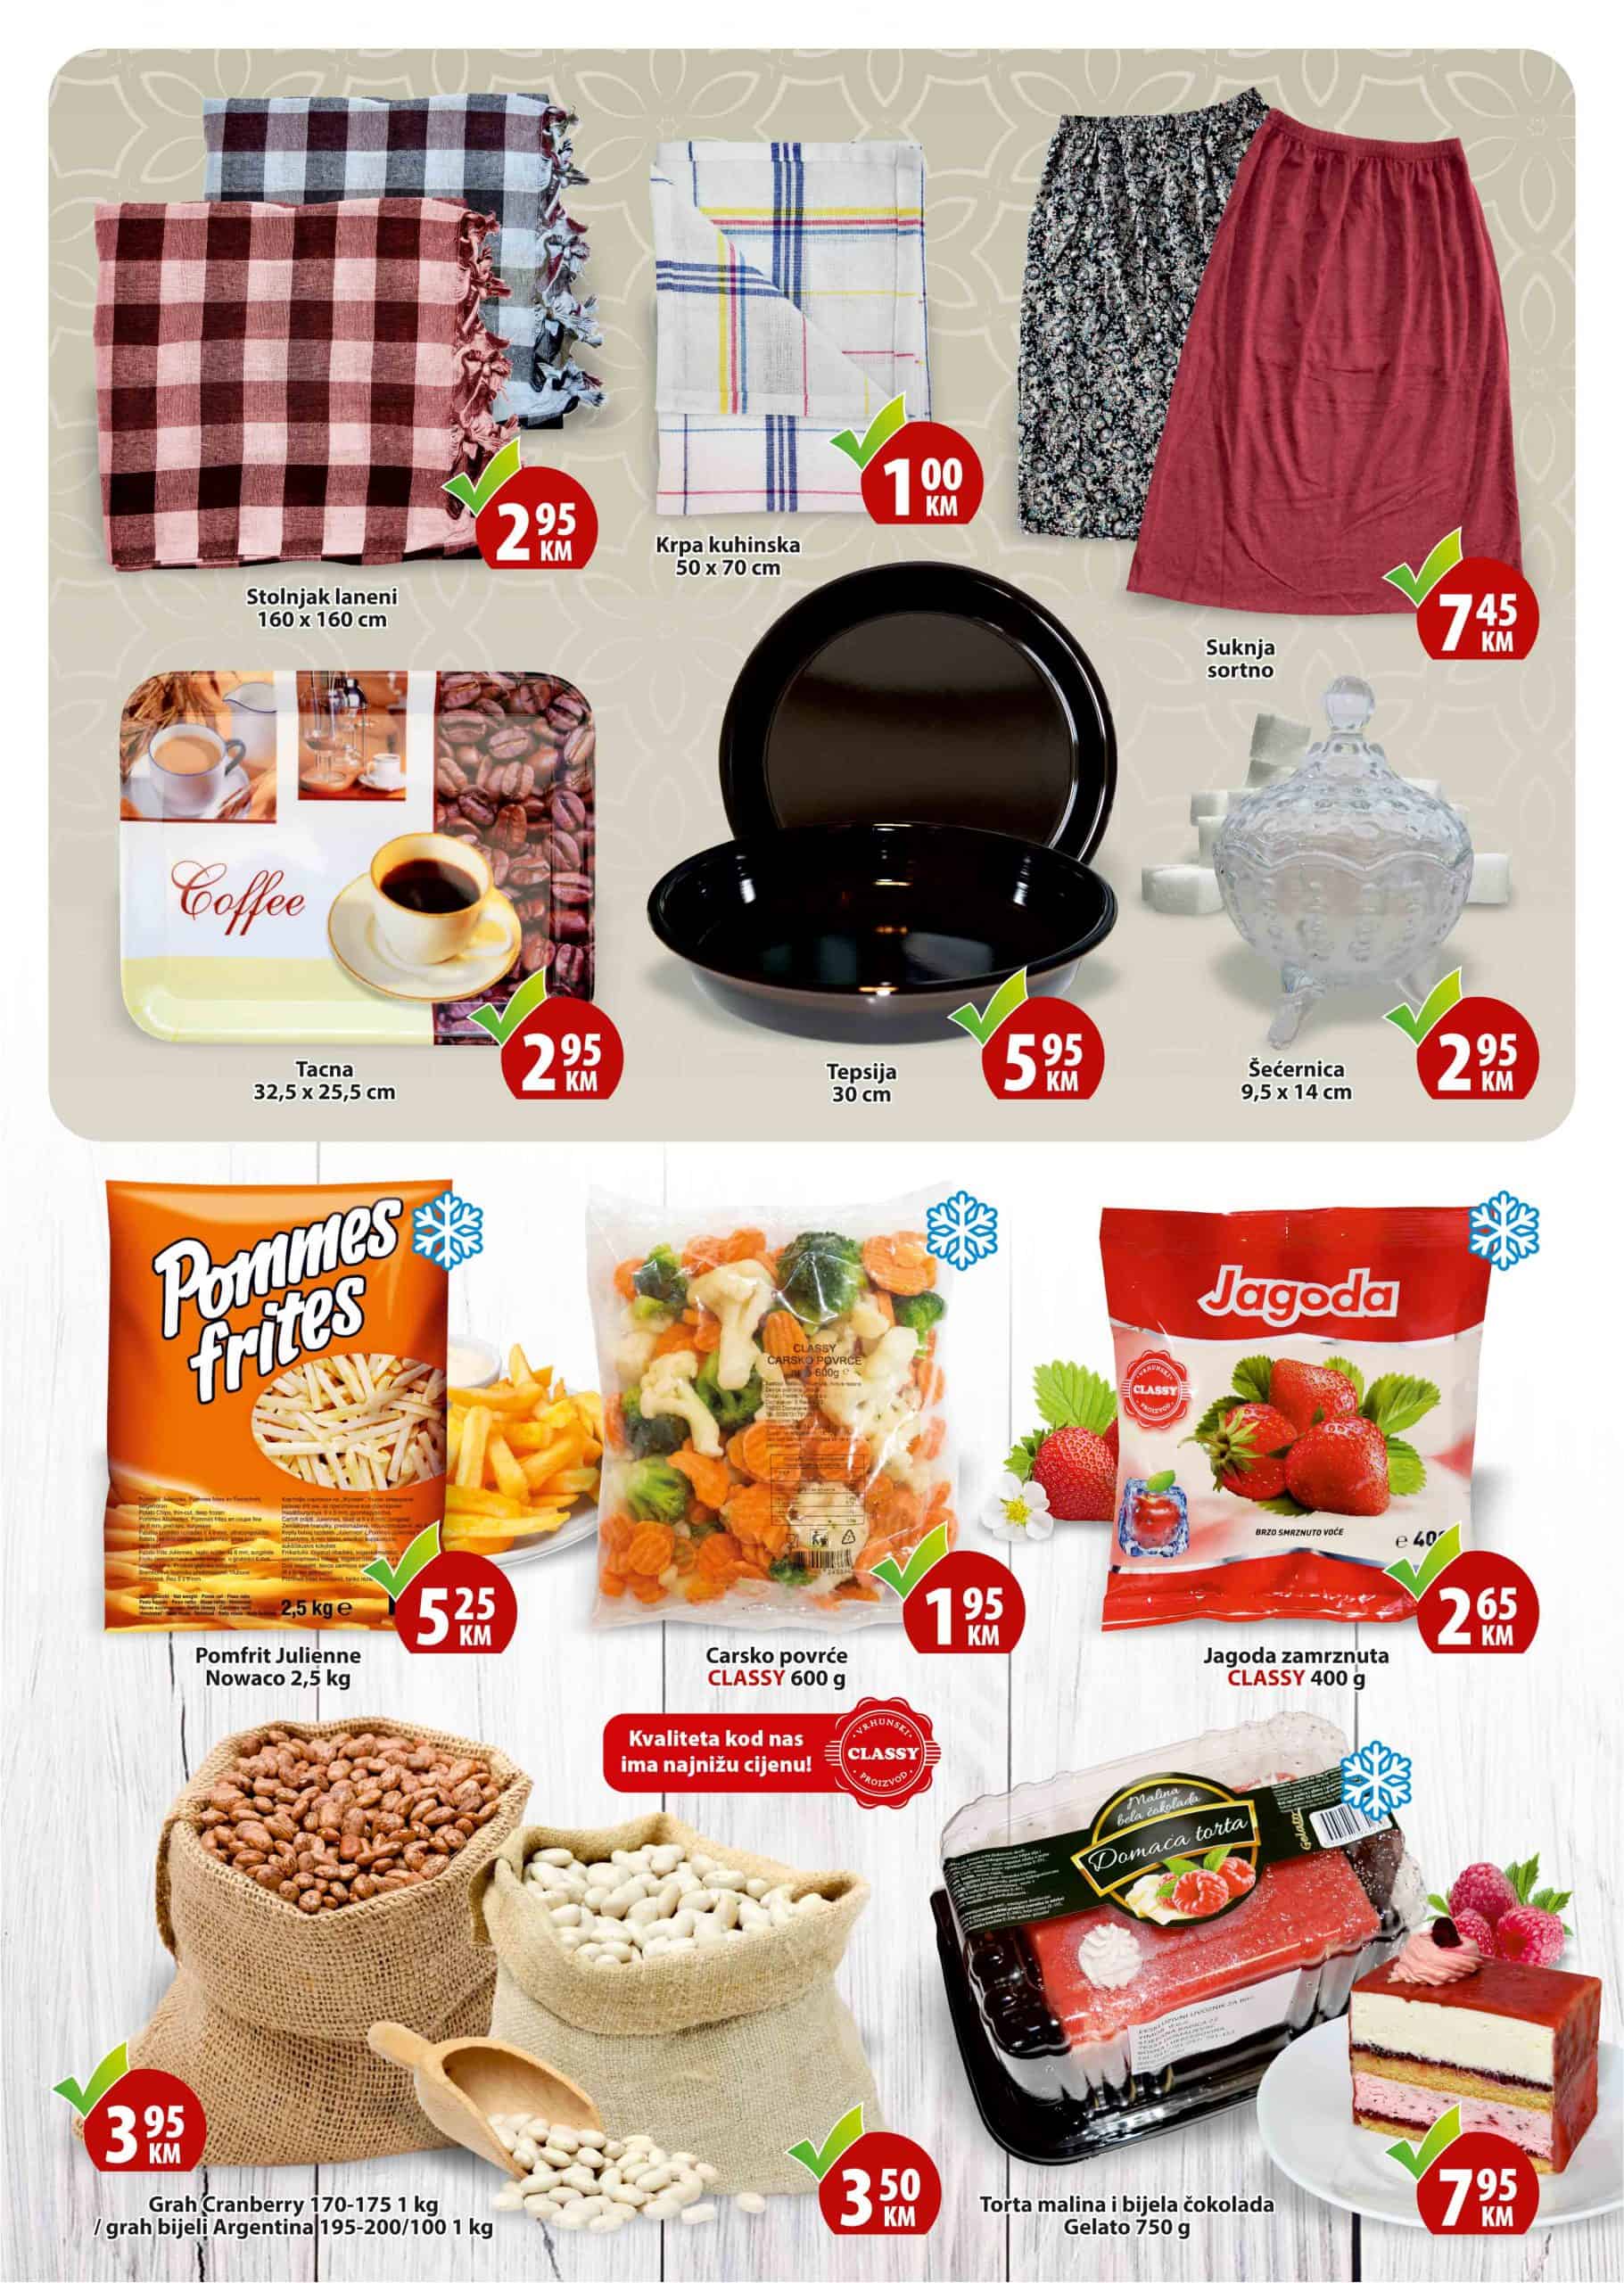 Mega Diskont katalog nam donosi odlične akcijske cijene za Ramazan. Pogledajte: akcijske cijene oraha, akcijske cijene hurmi. Mesne preradjevine i mljecni proizvodi su takodjer na akciji. Veliki izbor prehrambenih namirnica po super cijenama!